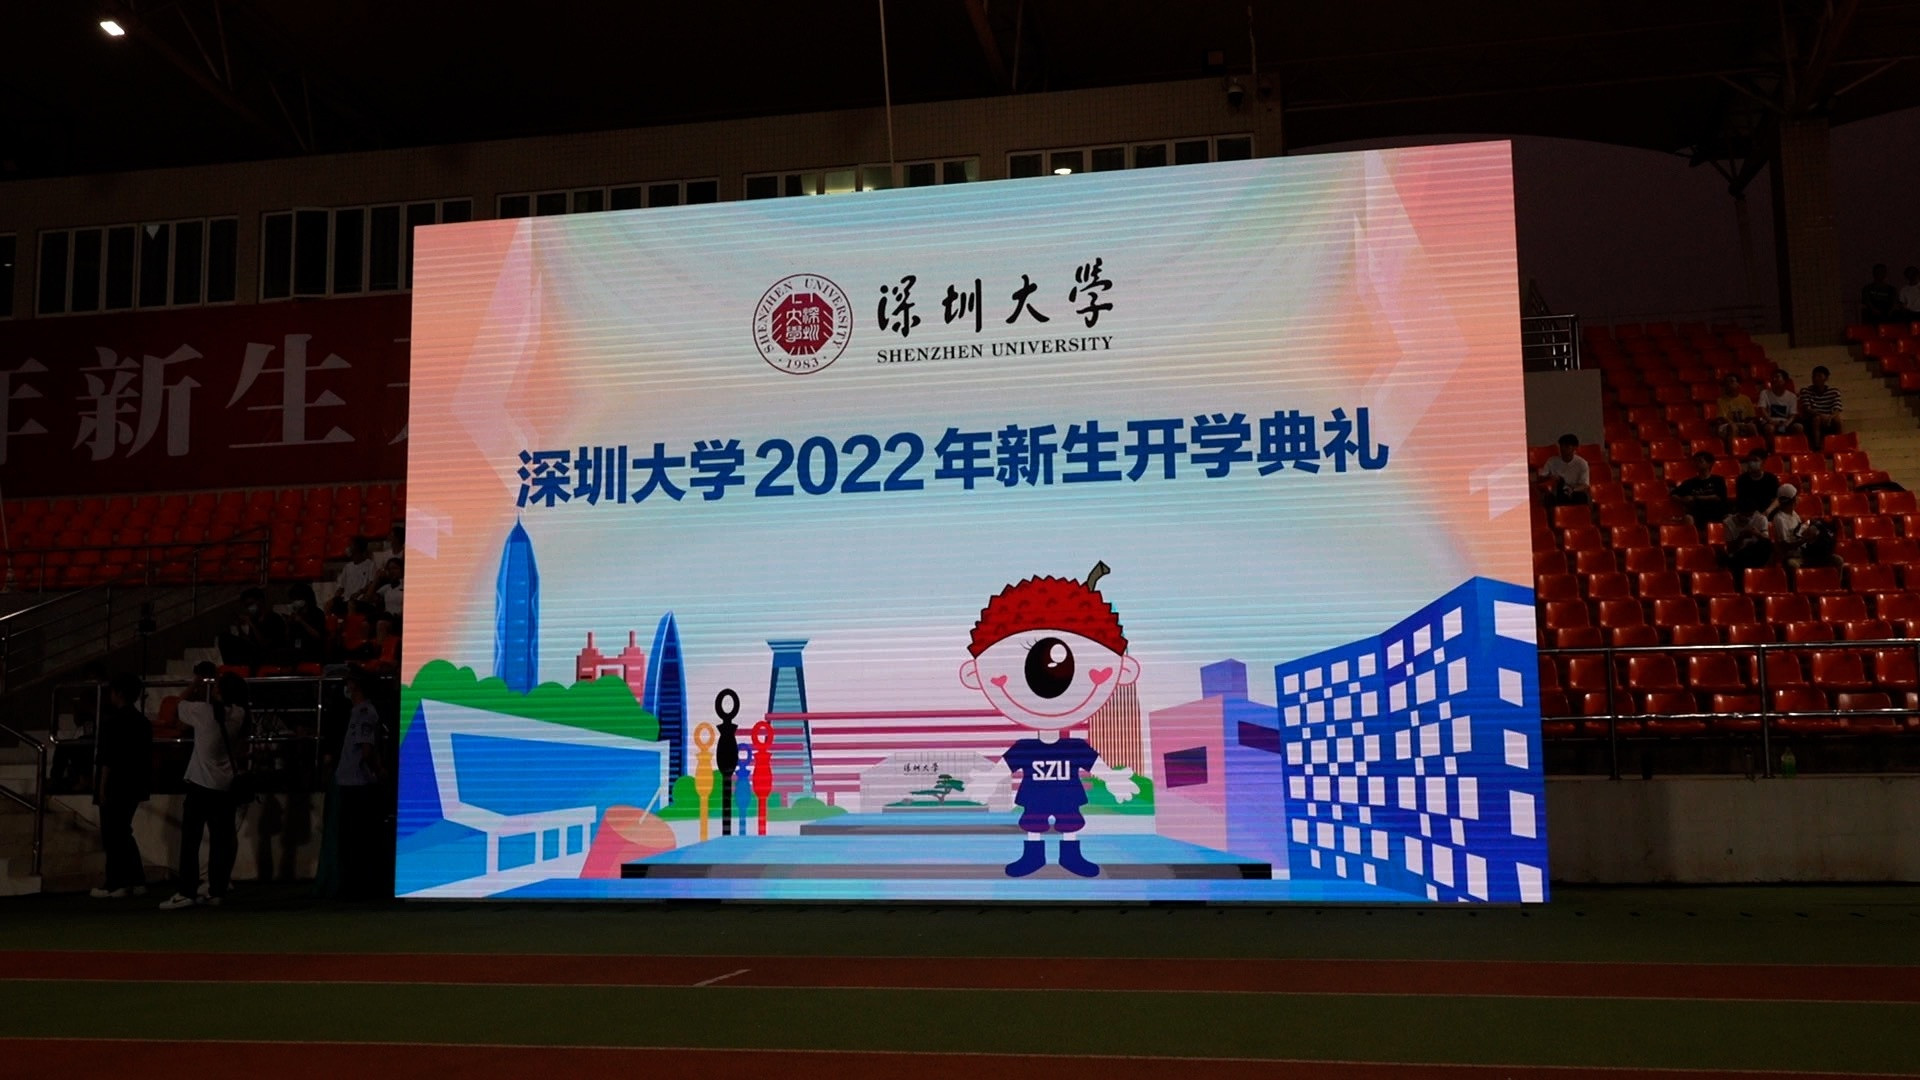 校长寄语致敬奋斗的青春, 深圳大学举行2022年开学典礼